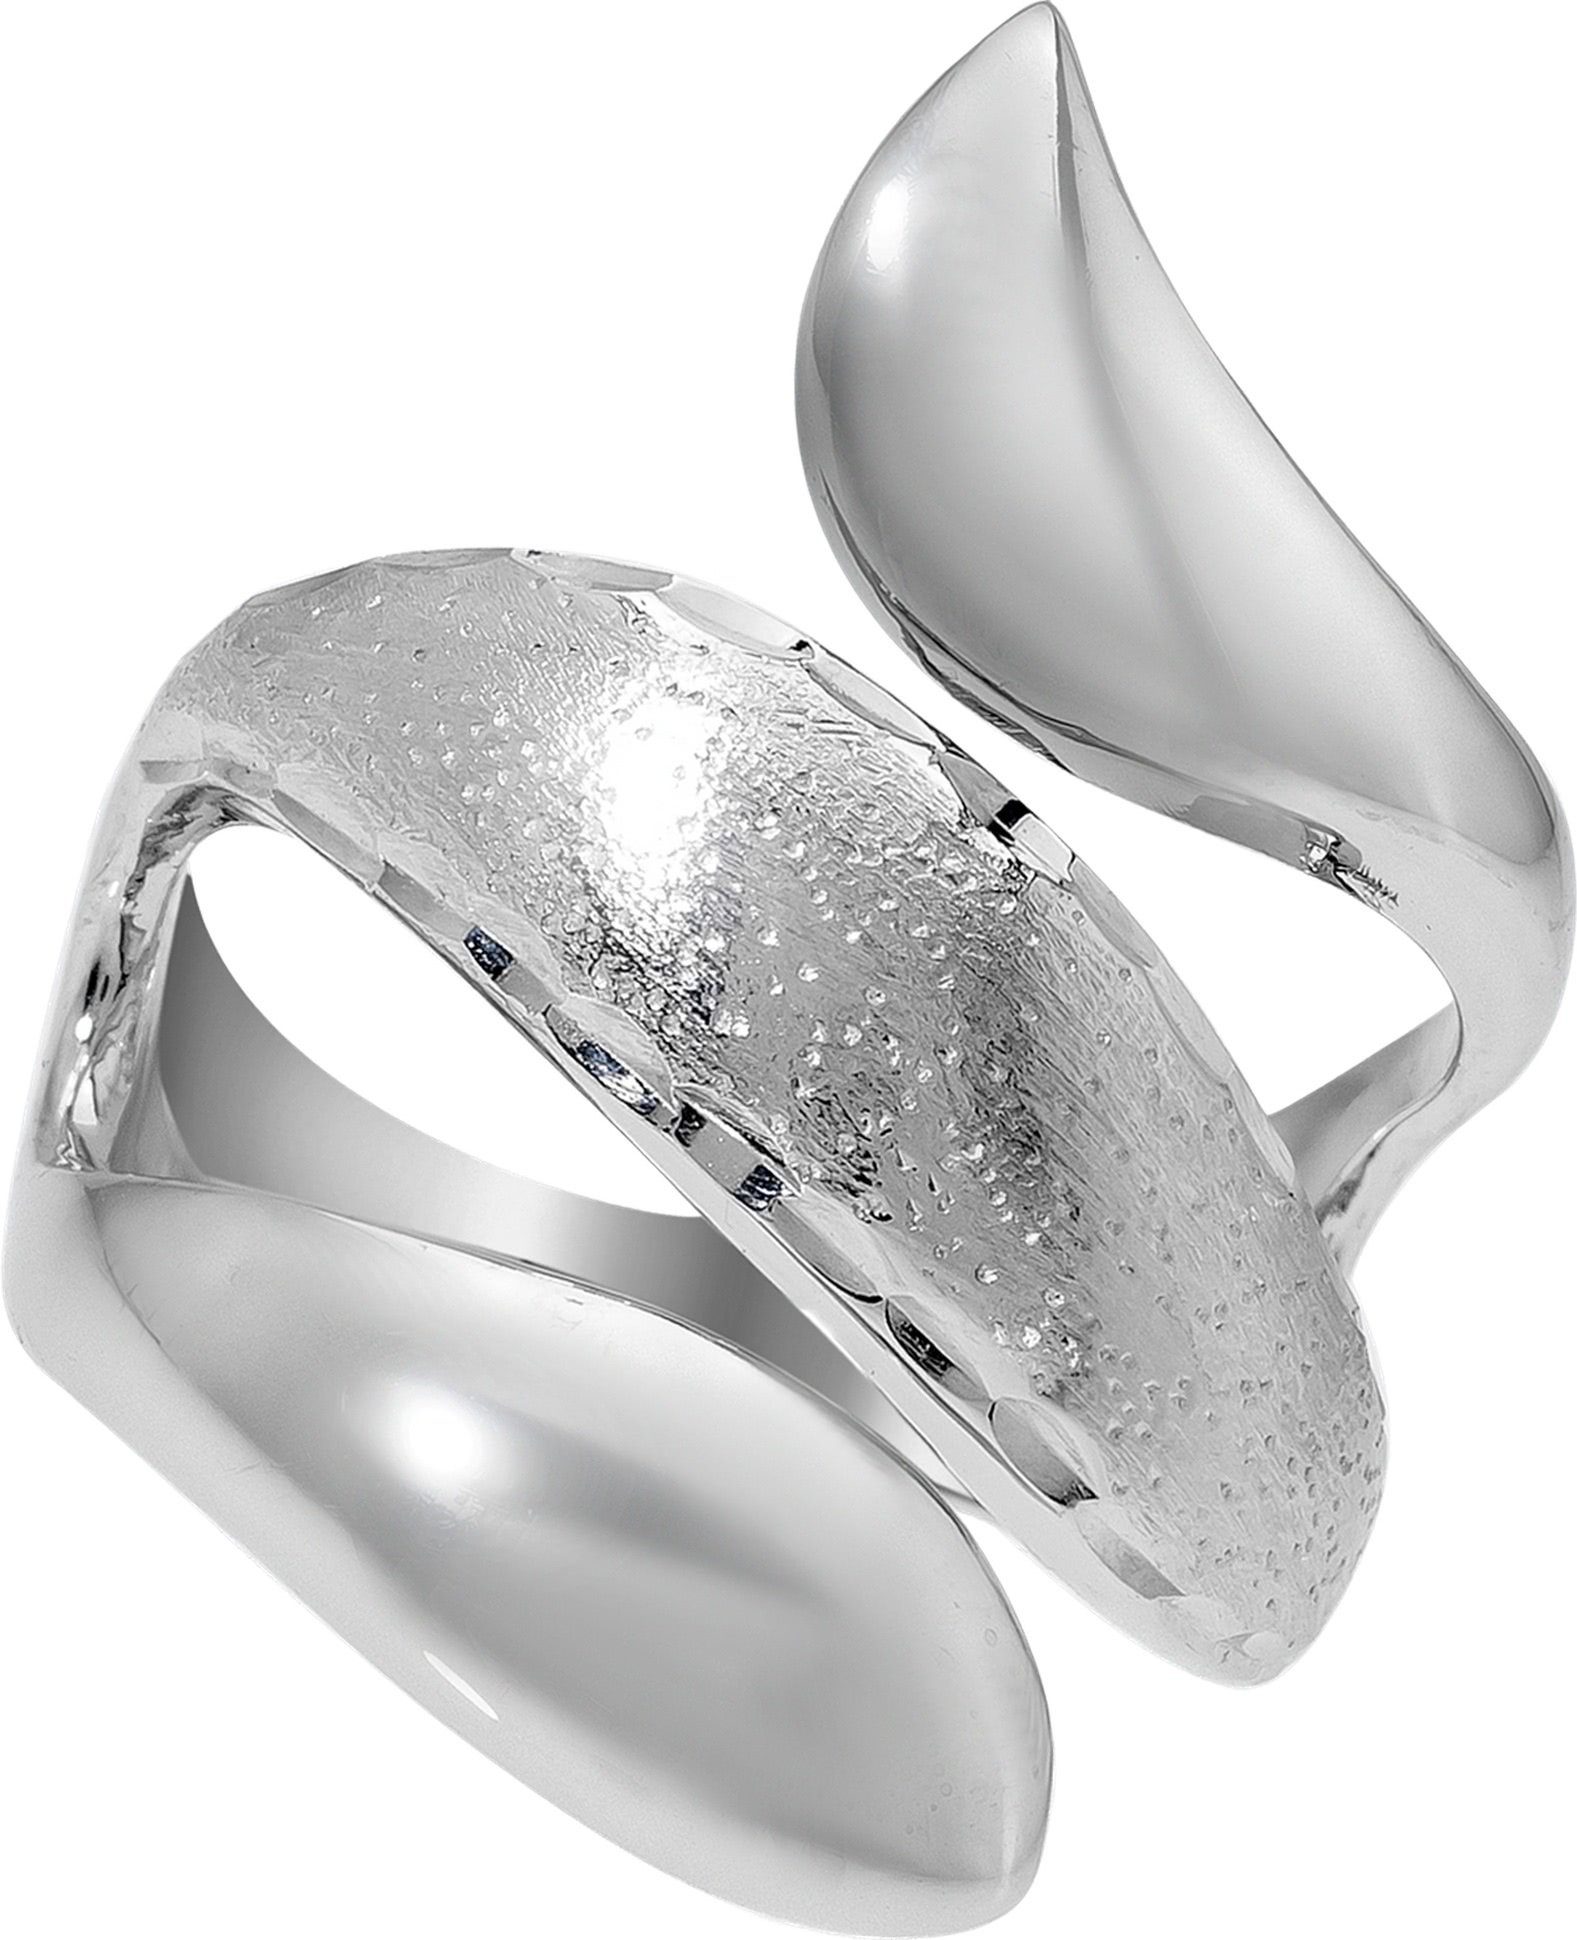 Balia Silberring Balia Ring für Damen mit diamantierter (Fingerring), Fingerring Größe 54 (17,2), 925 Sterling Silber (Schlange) Silber 925 | Silberringe